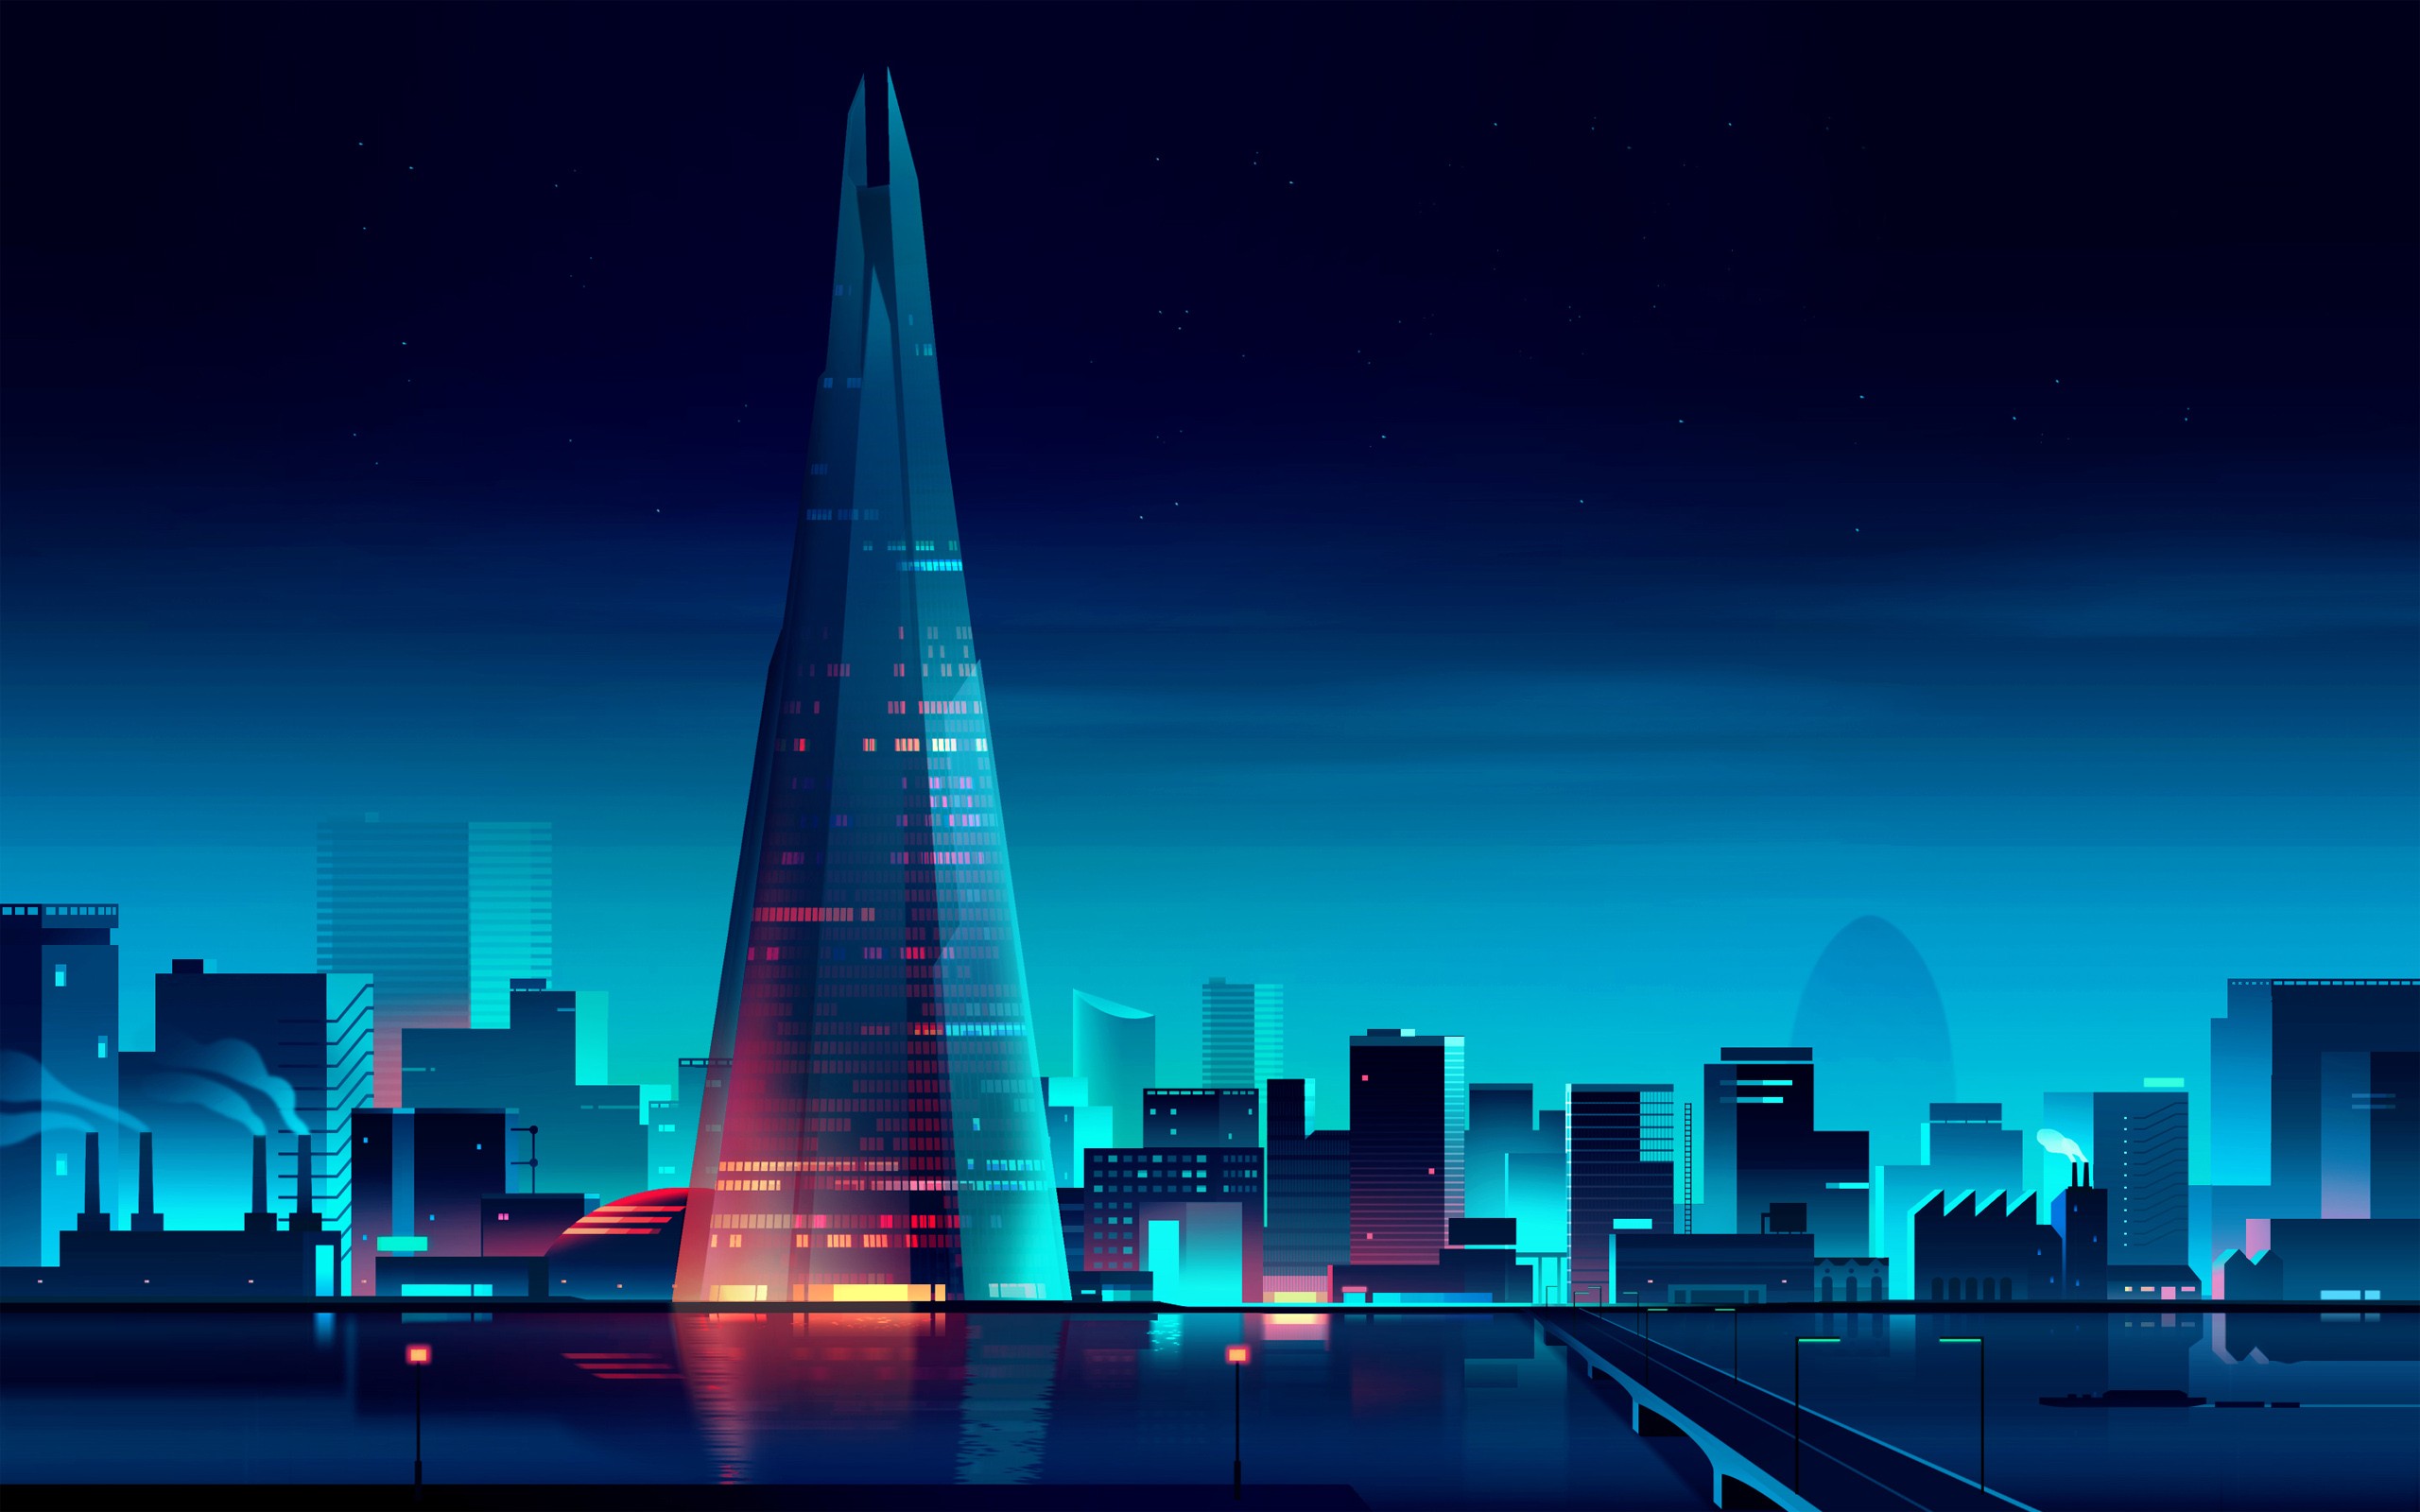 Digital Art Artwork Architecture Building Skyscraper Water Bridge Night Lights Stars Cityscape Refle 2560x1600